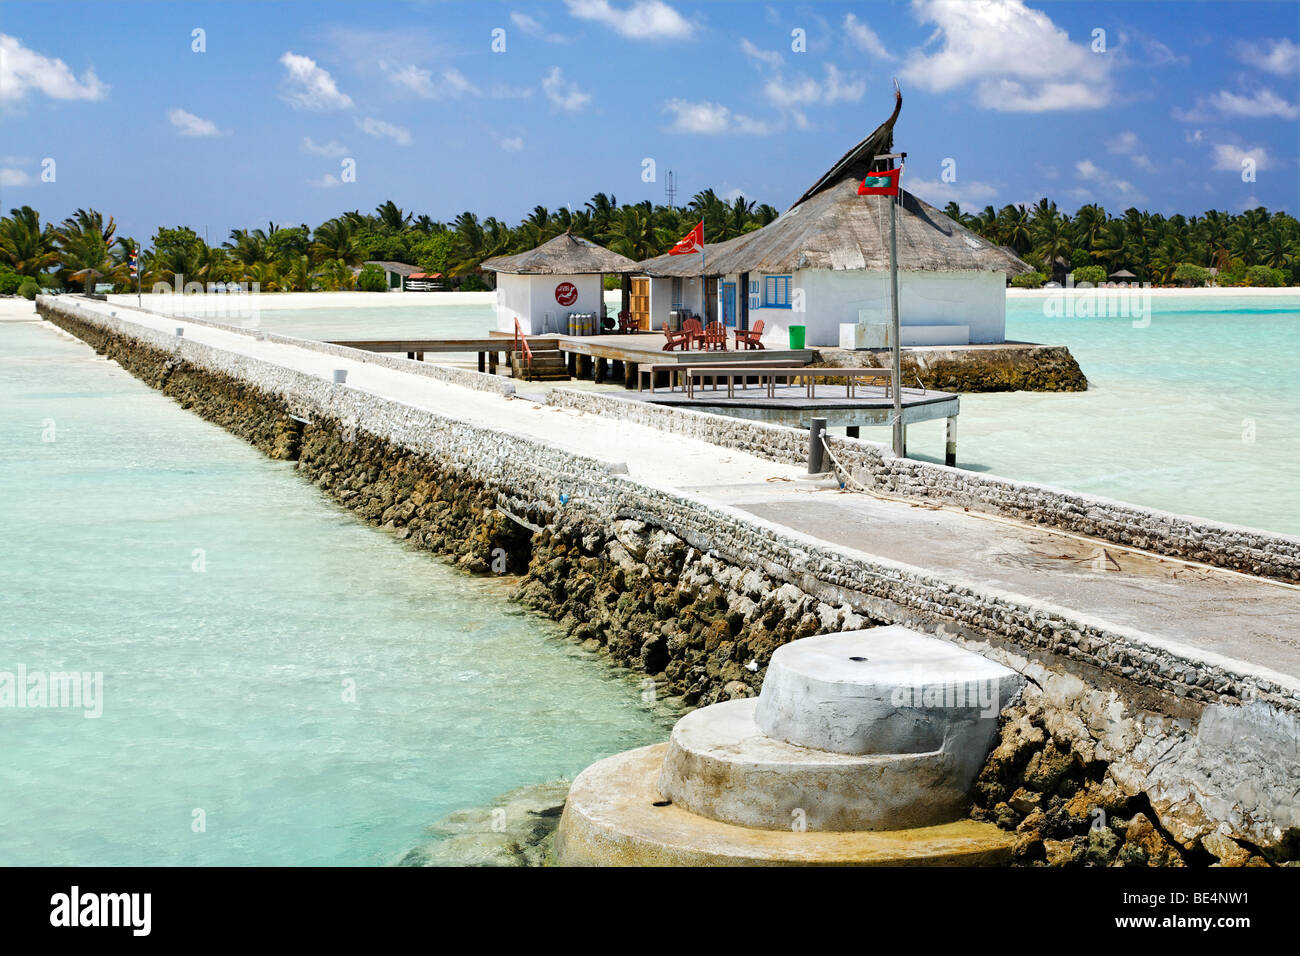 Euro subacquei, dive shop, jetty, Maldive isola, South Male Atoll, Maldive, Achipelago, Asia, Oceano Indiano Foto Stock